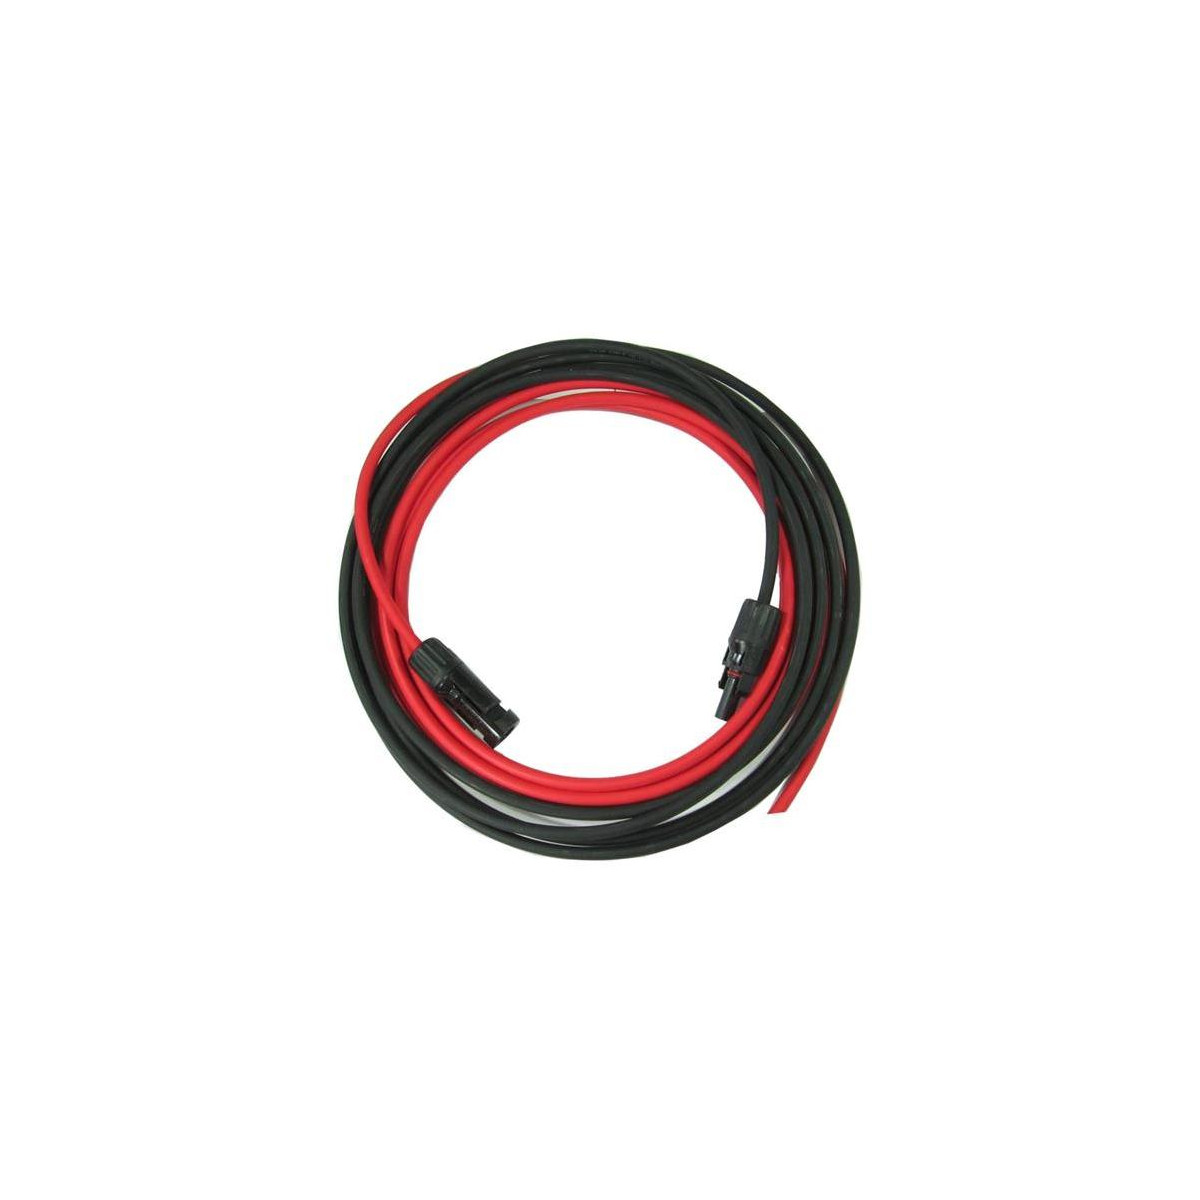 More about Solární kabel 6mm2, červený+černý s konektory MC4, 5m